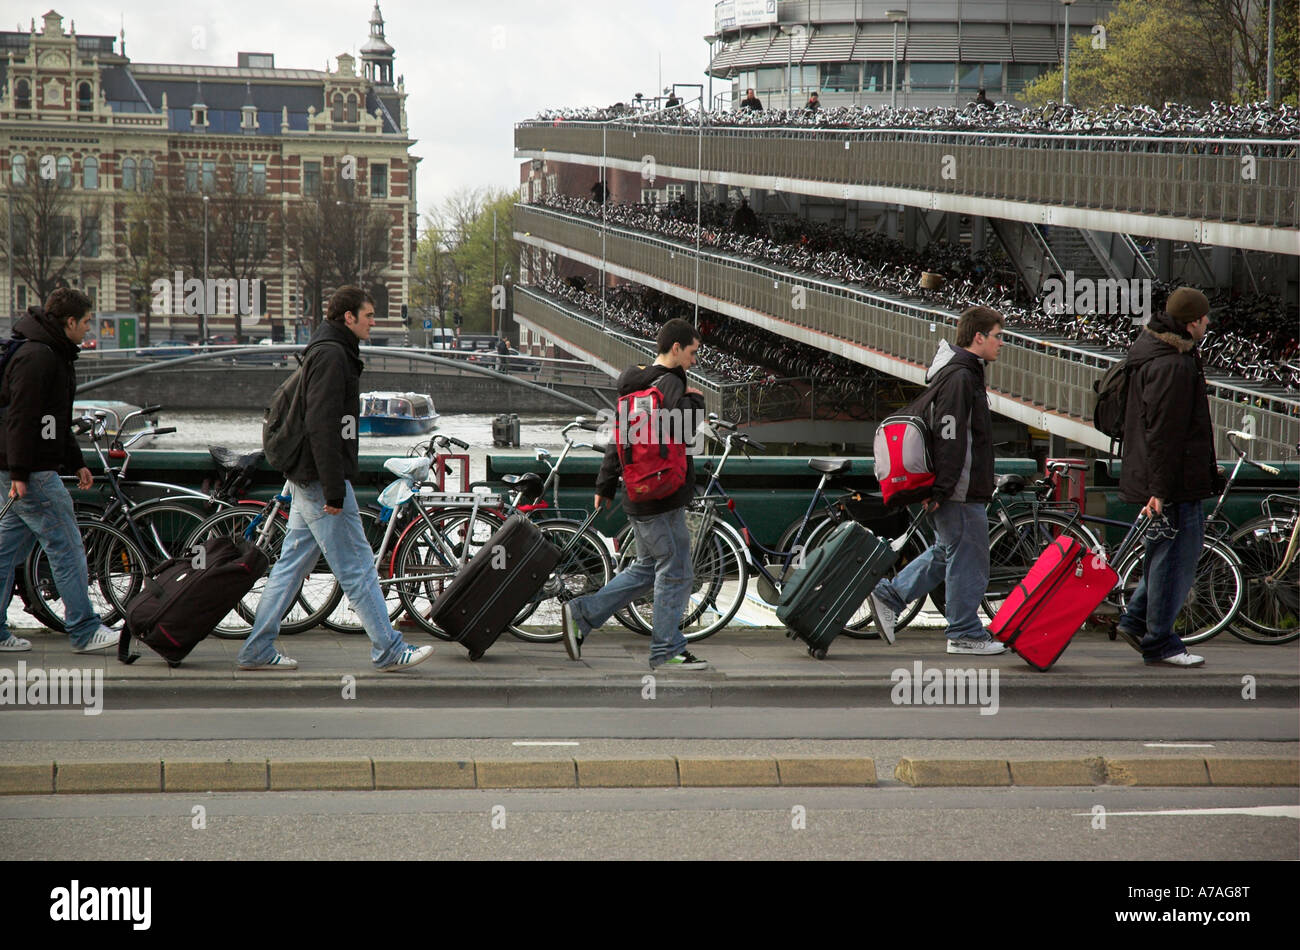 Una línea de turistas en Amsterdam, todos tirando de una maleta de la misma manera Foto de stock